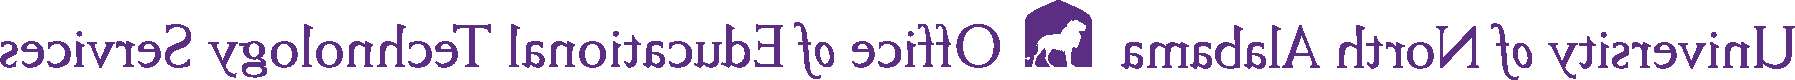 ed-tech logo 2